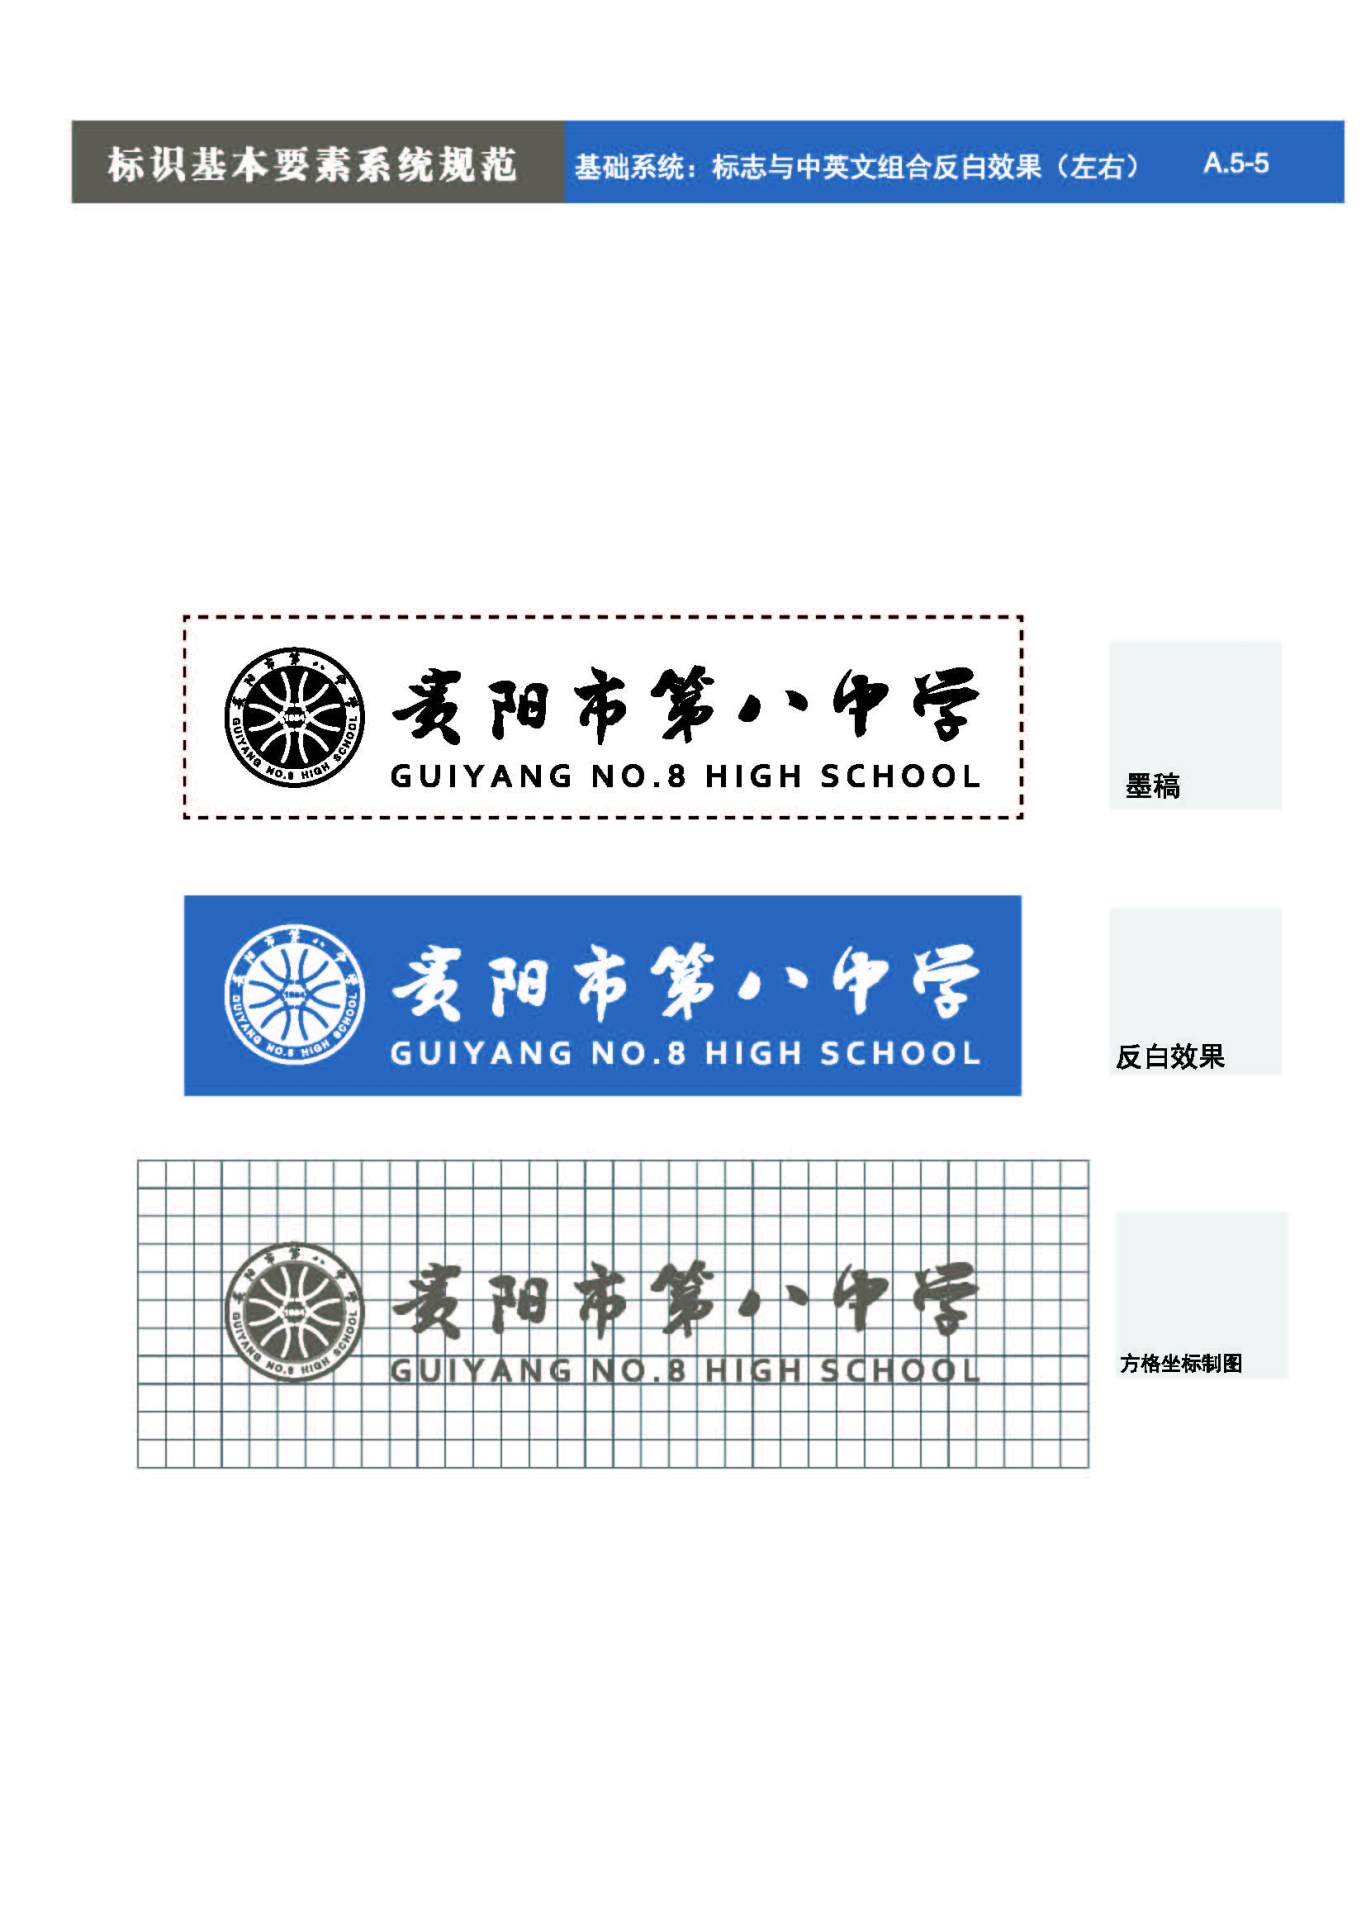 貴陽第八中學Logo、VIS設計圖16